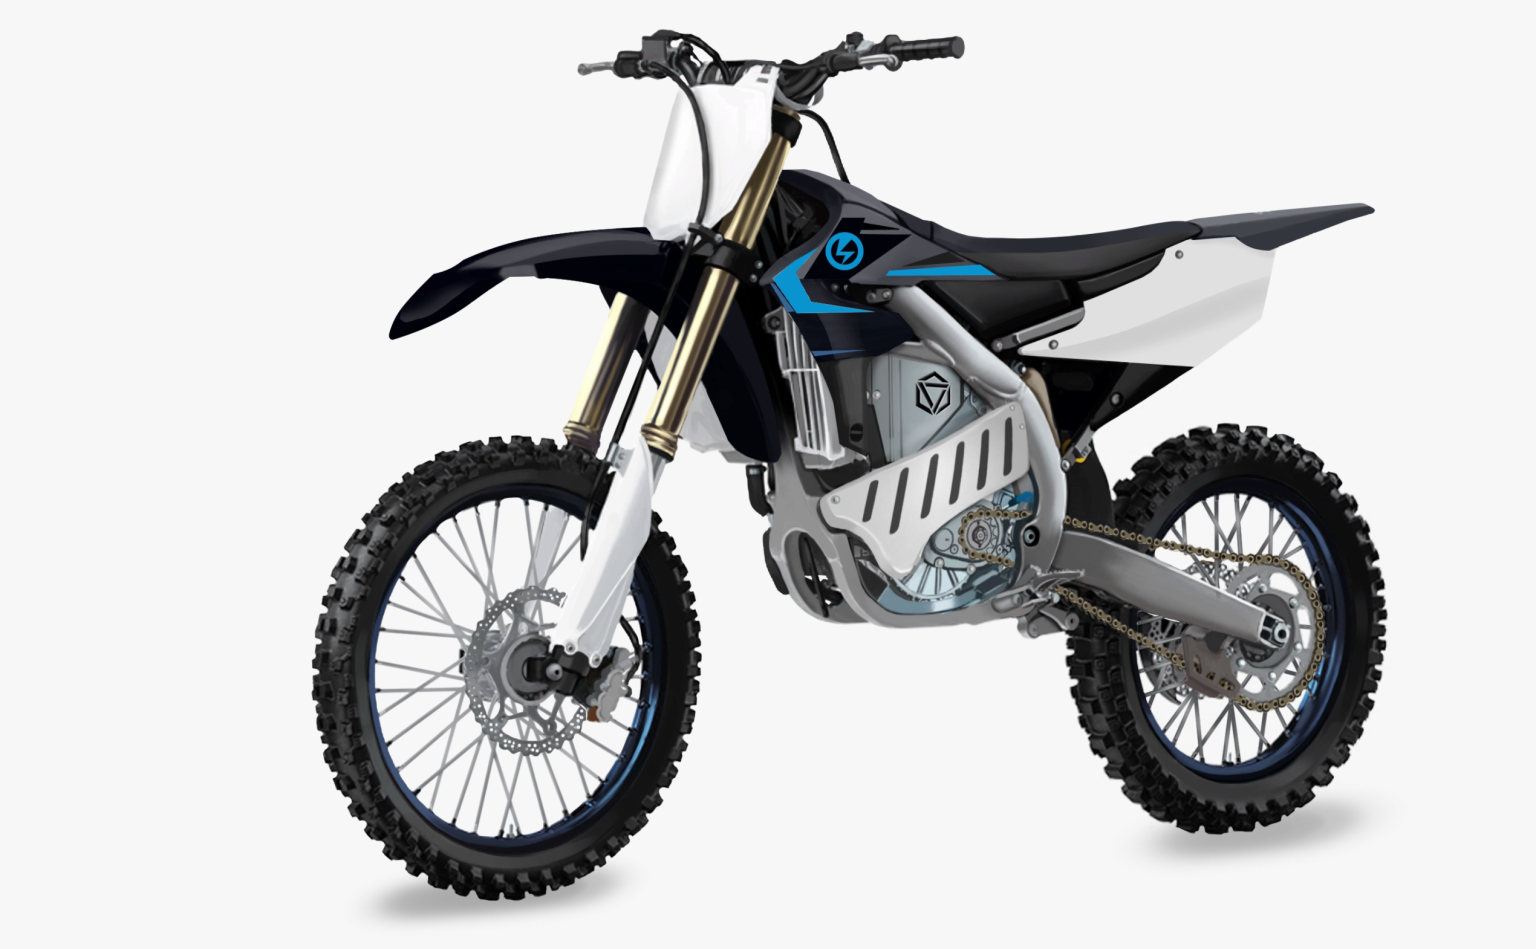 EMX Powertrain, la moto-cross électrique conçue en partenariat avec Yamaha